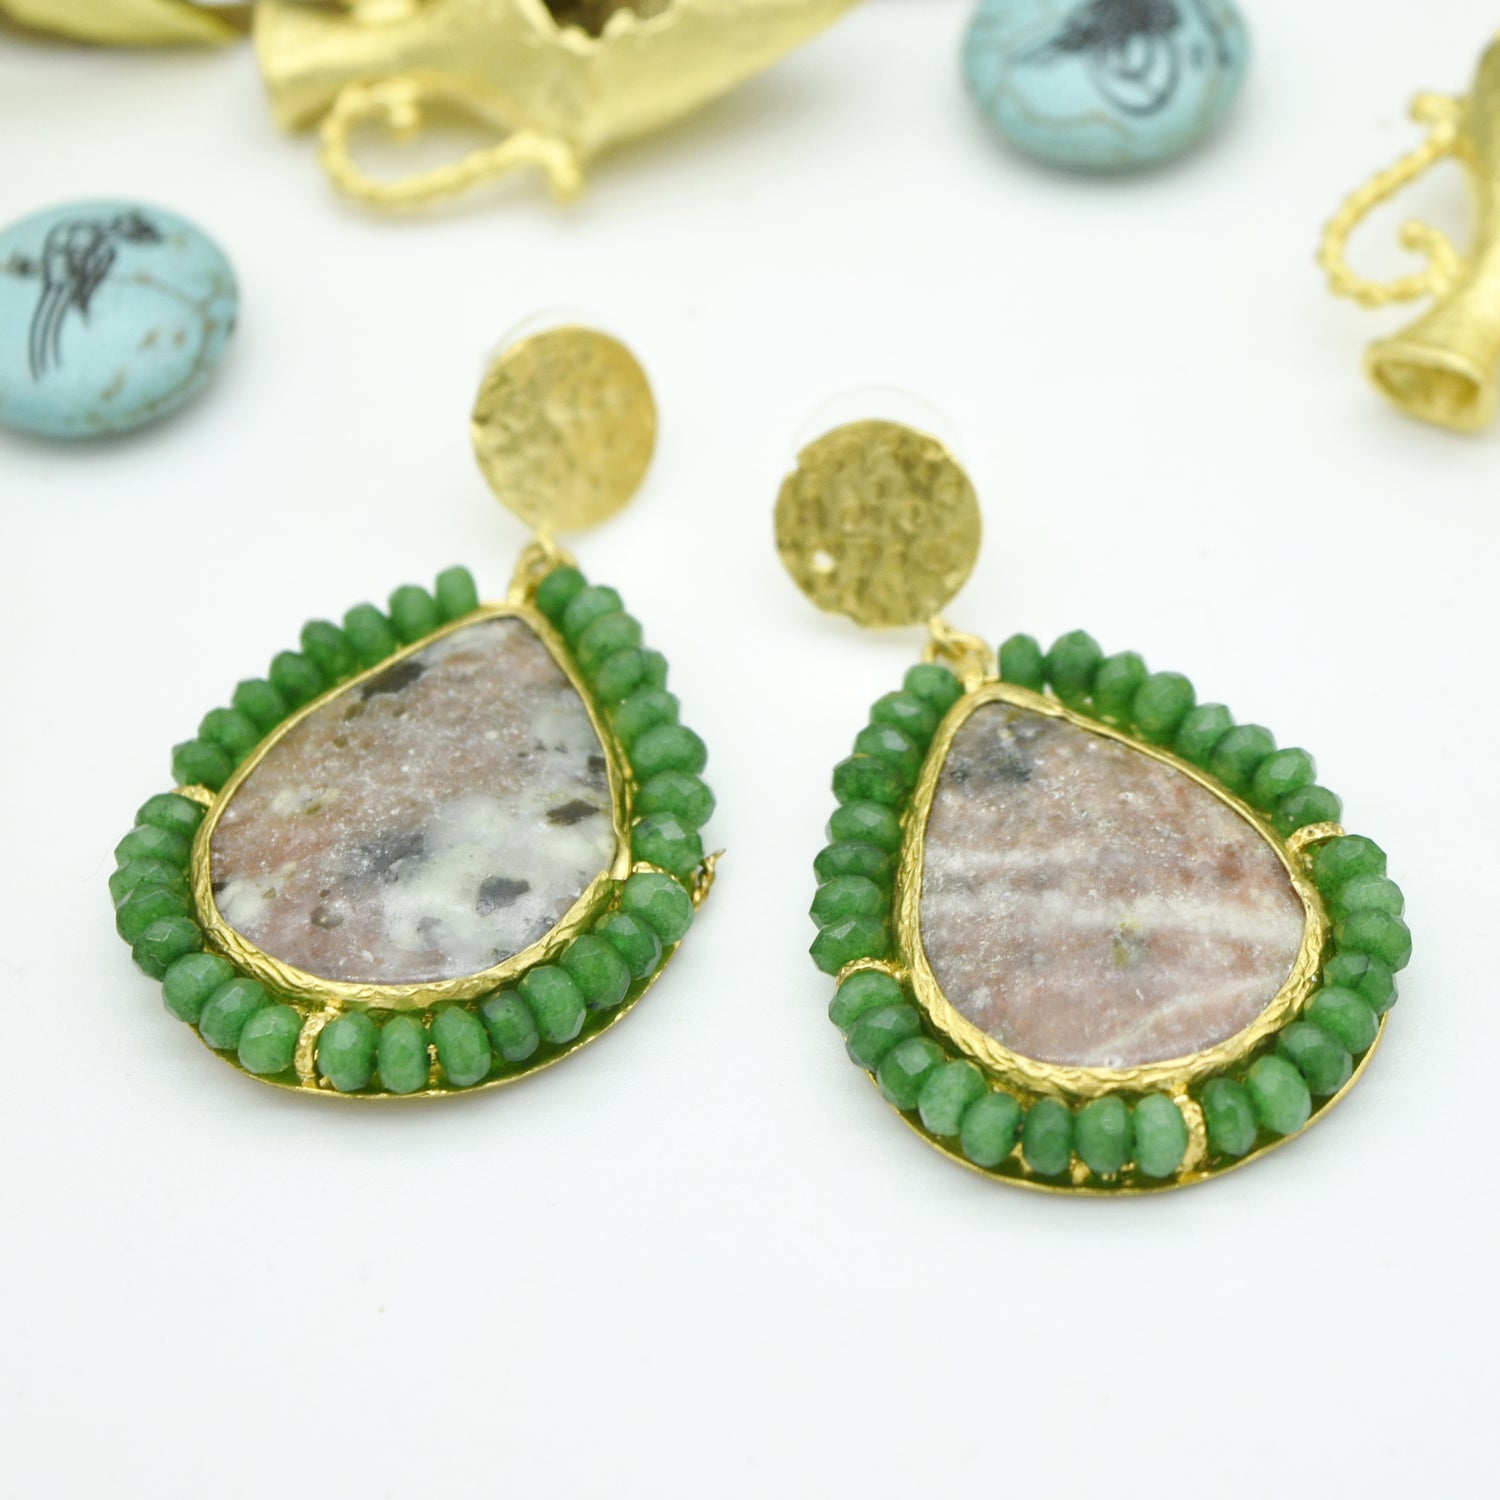 Aylas Jasper Jade semi precious gemstone earrings - 21ct Gold plated Handmade